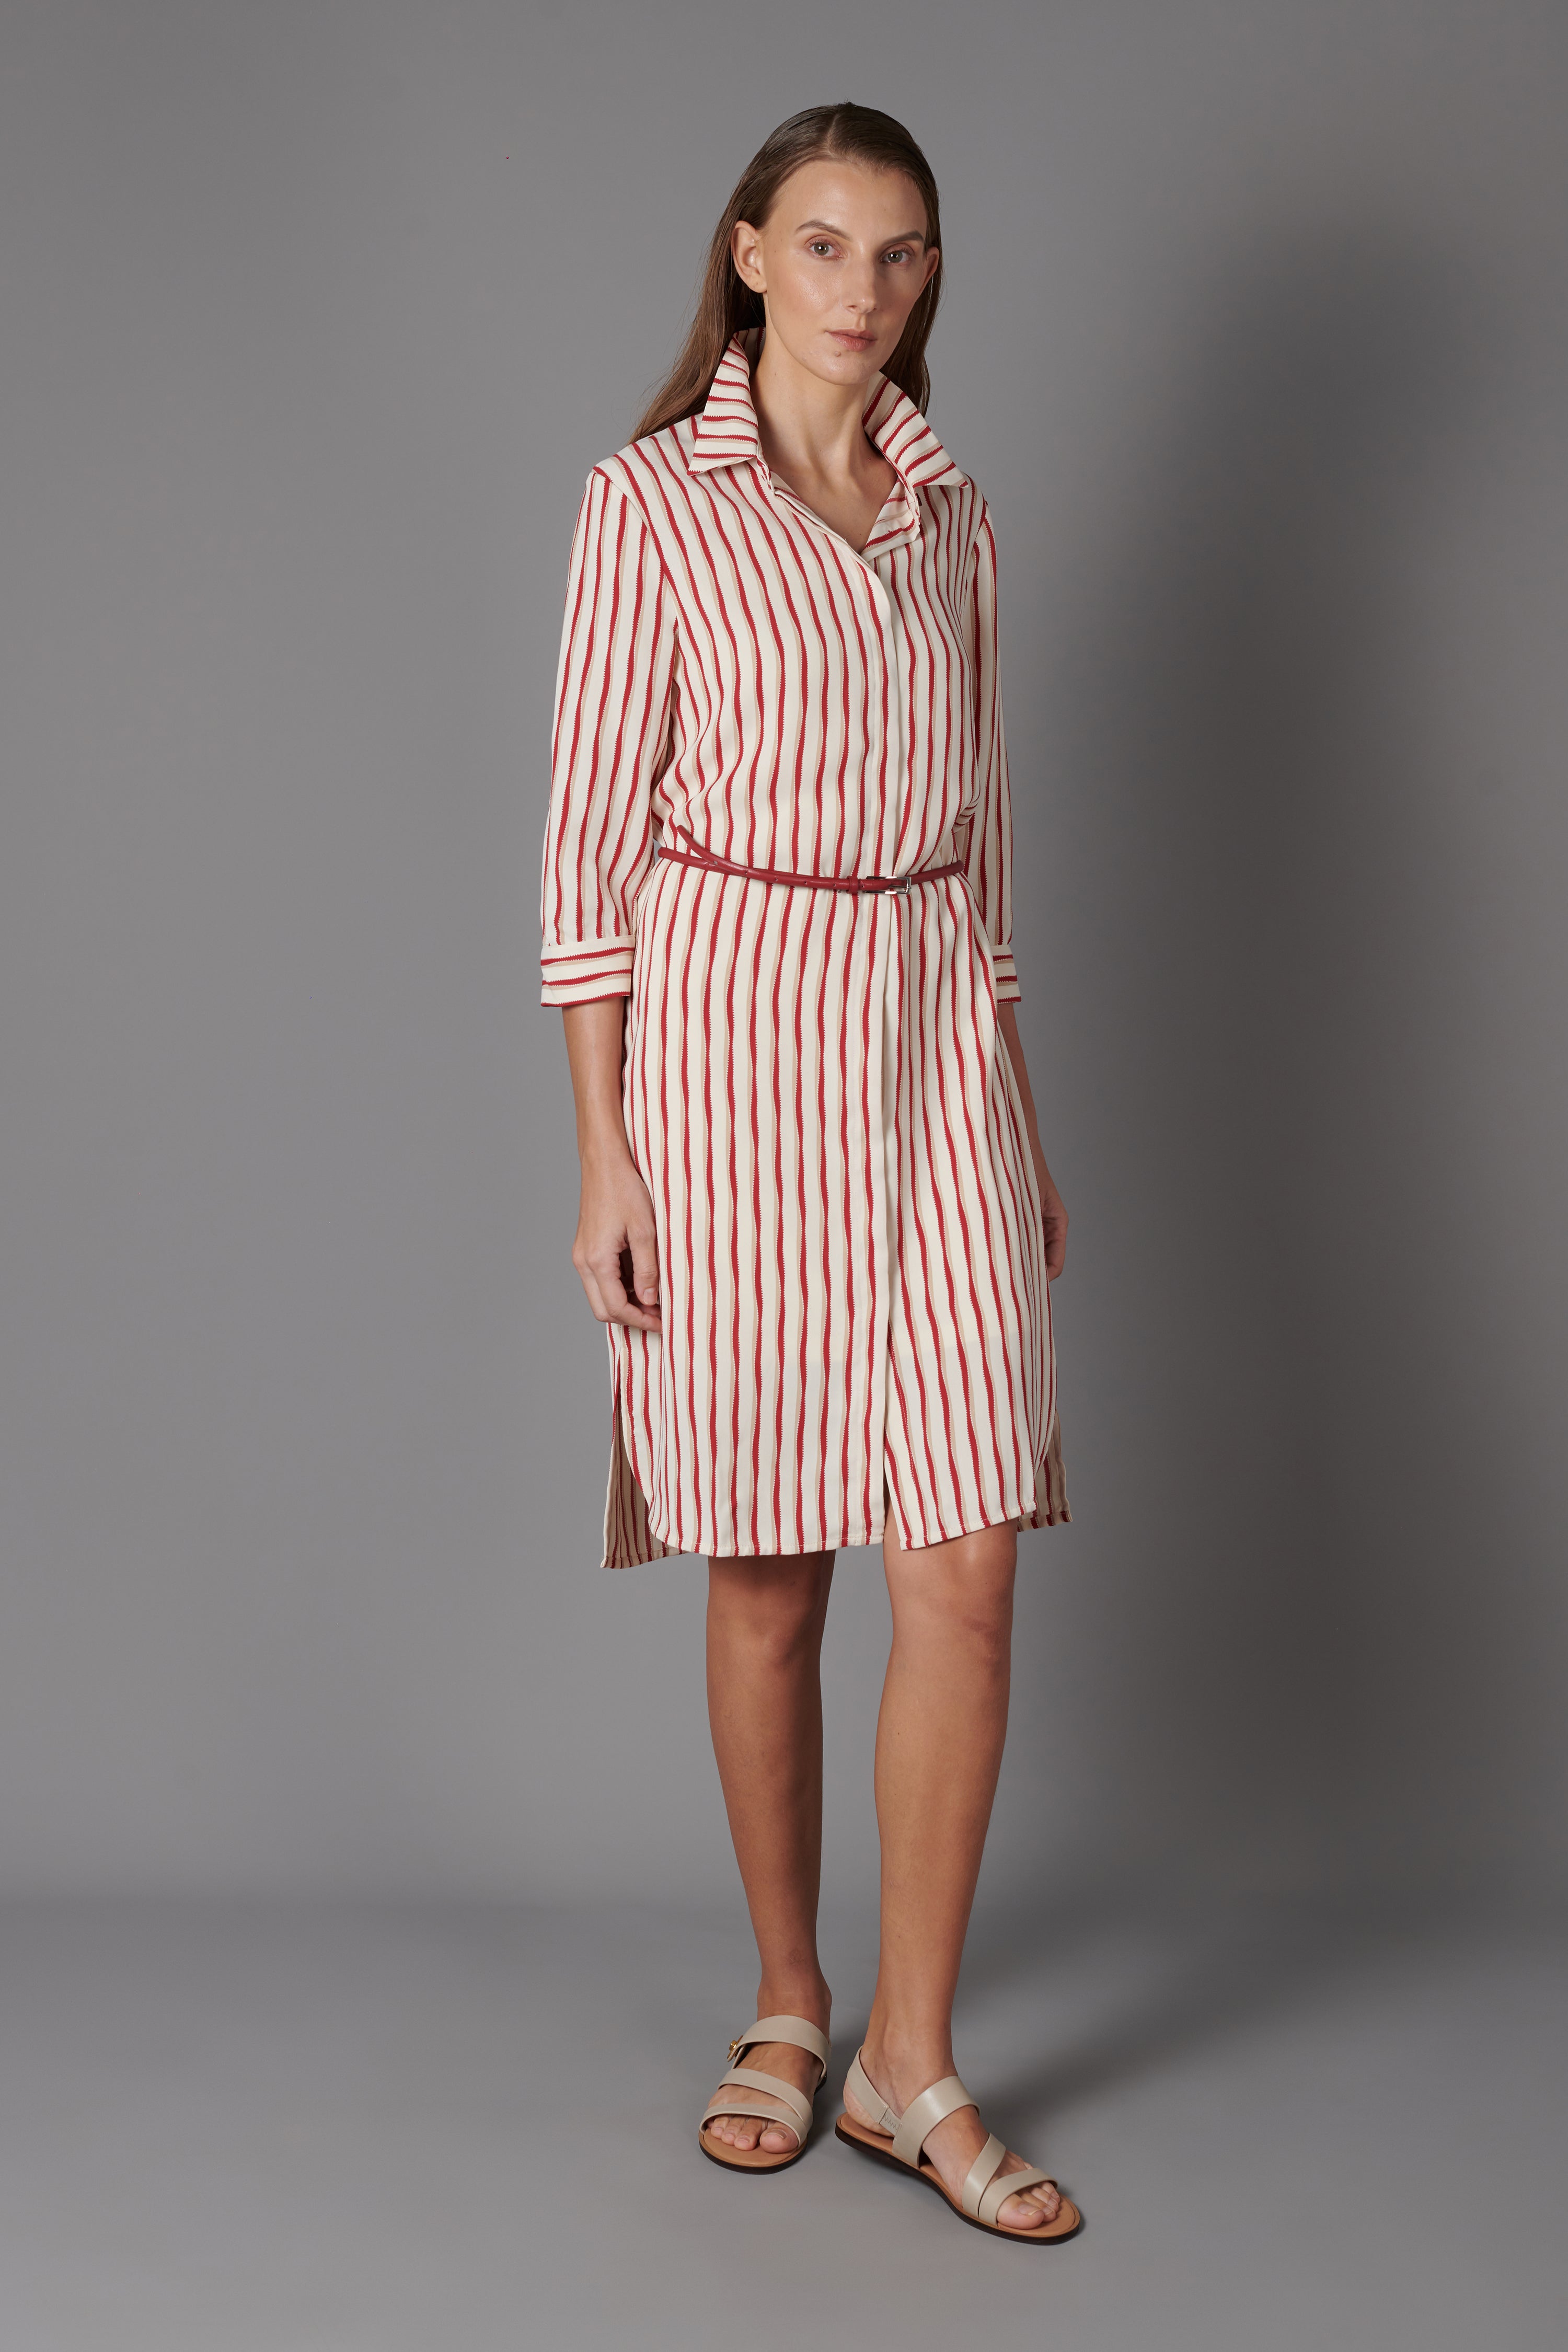 Striped Shirt Dress – Elita ☀ Co.